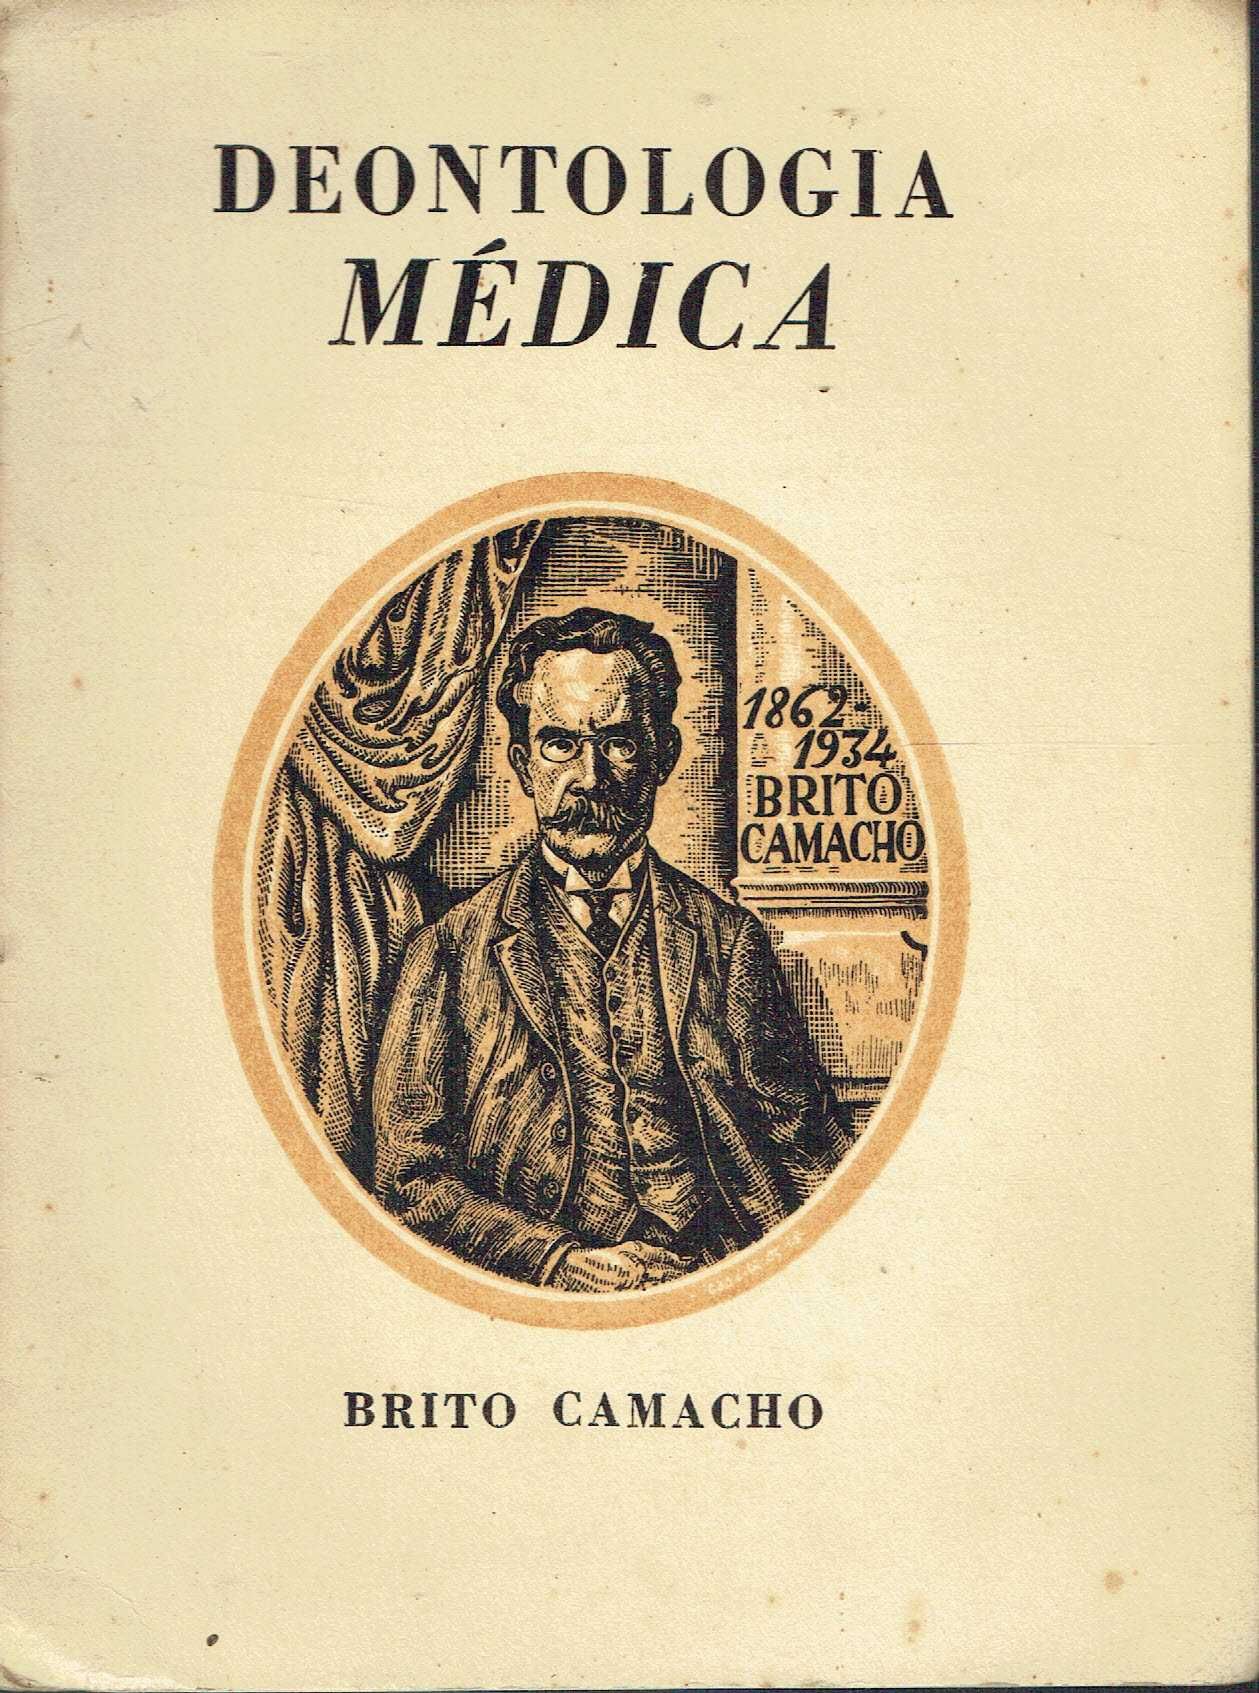 14002

Brito Camacho
Deontologia Médica